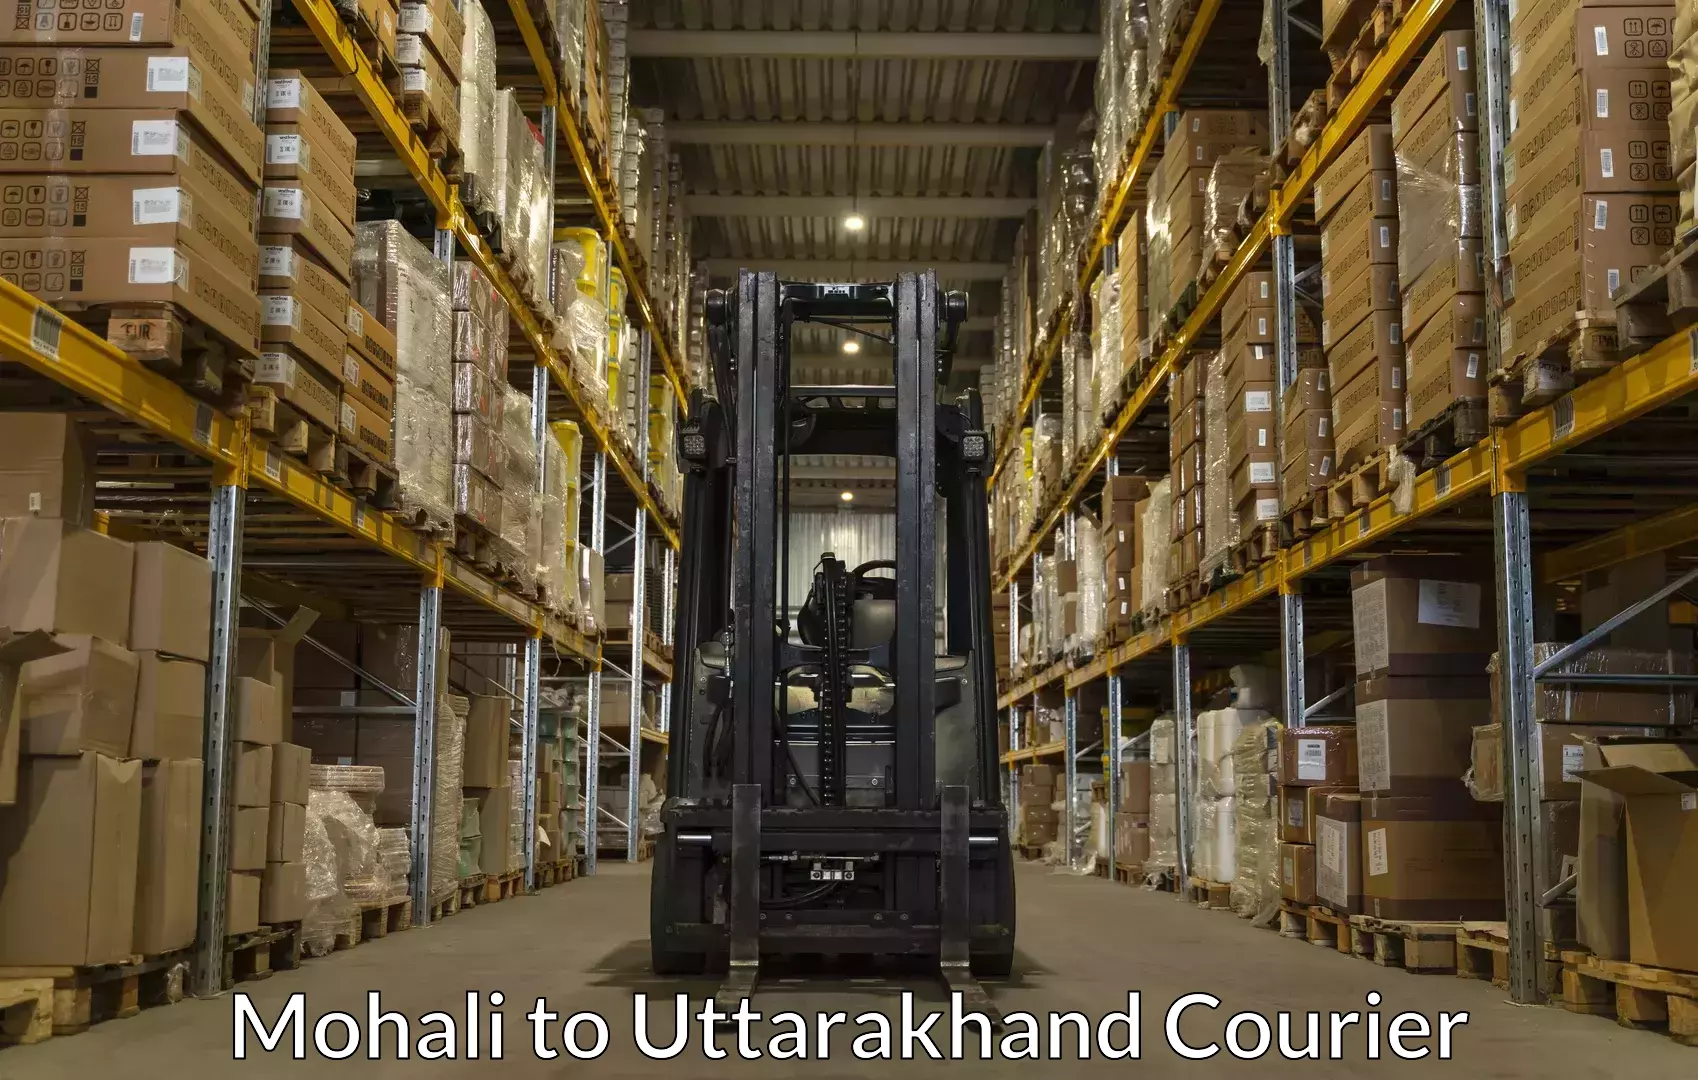 Luggage transfer service Mohali to Uttarakhand